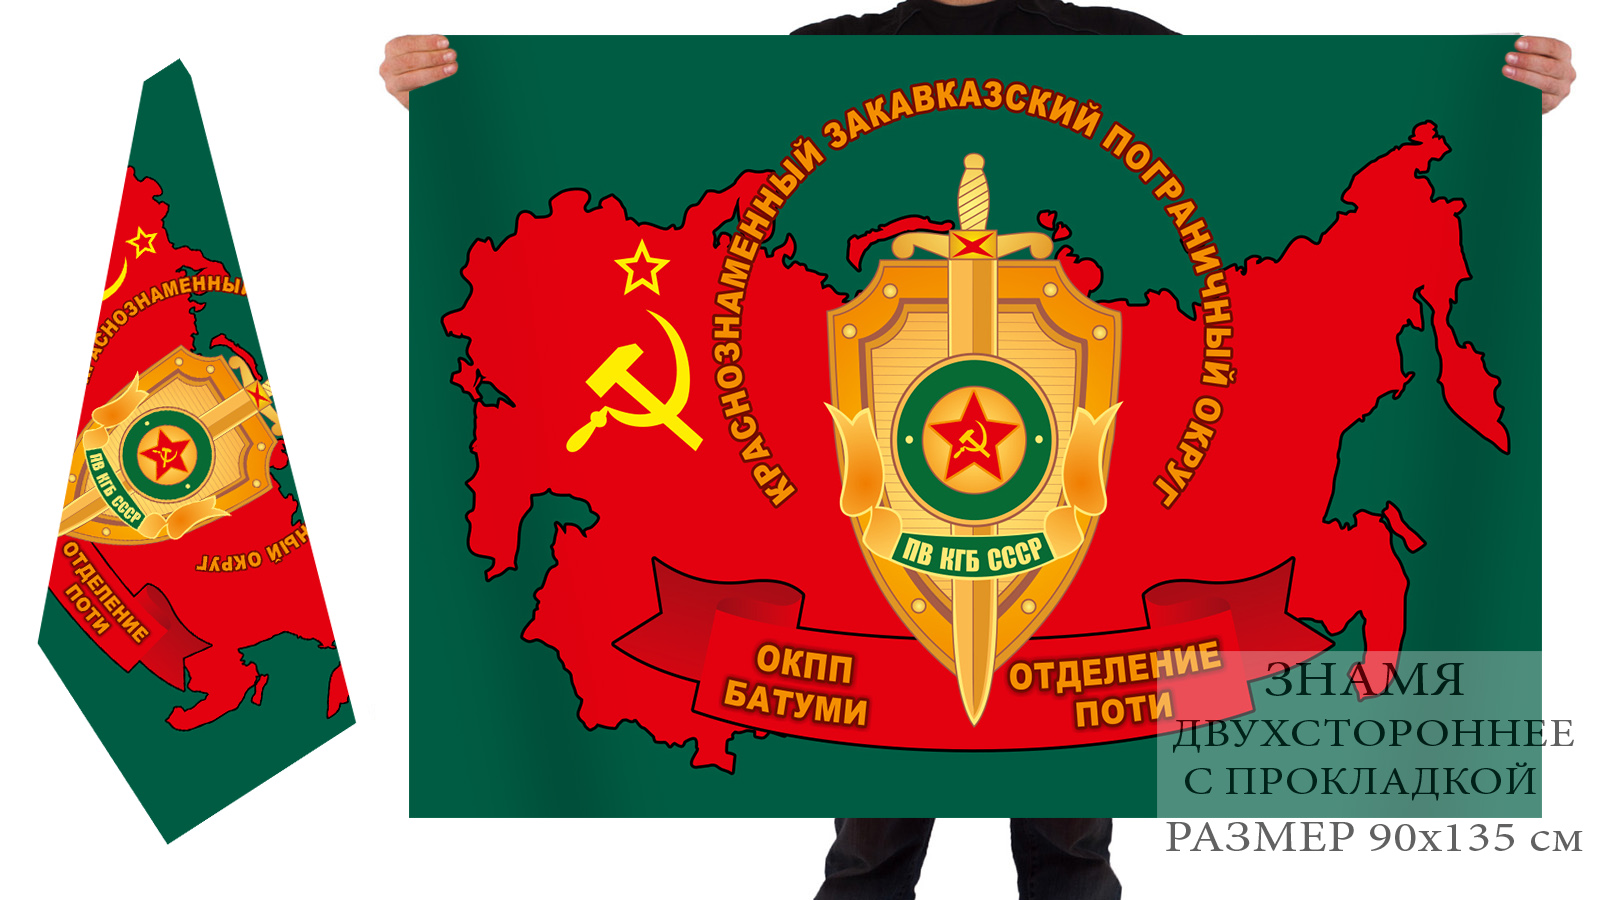 Купить в интернет магазине флаг «Закавказский пограничный округ ОКПП Батуми, отделение Поти»